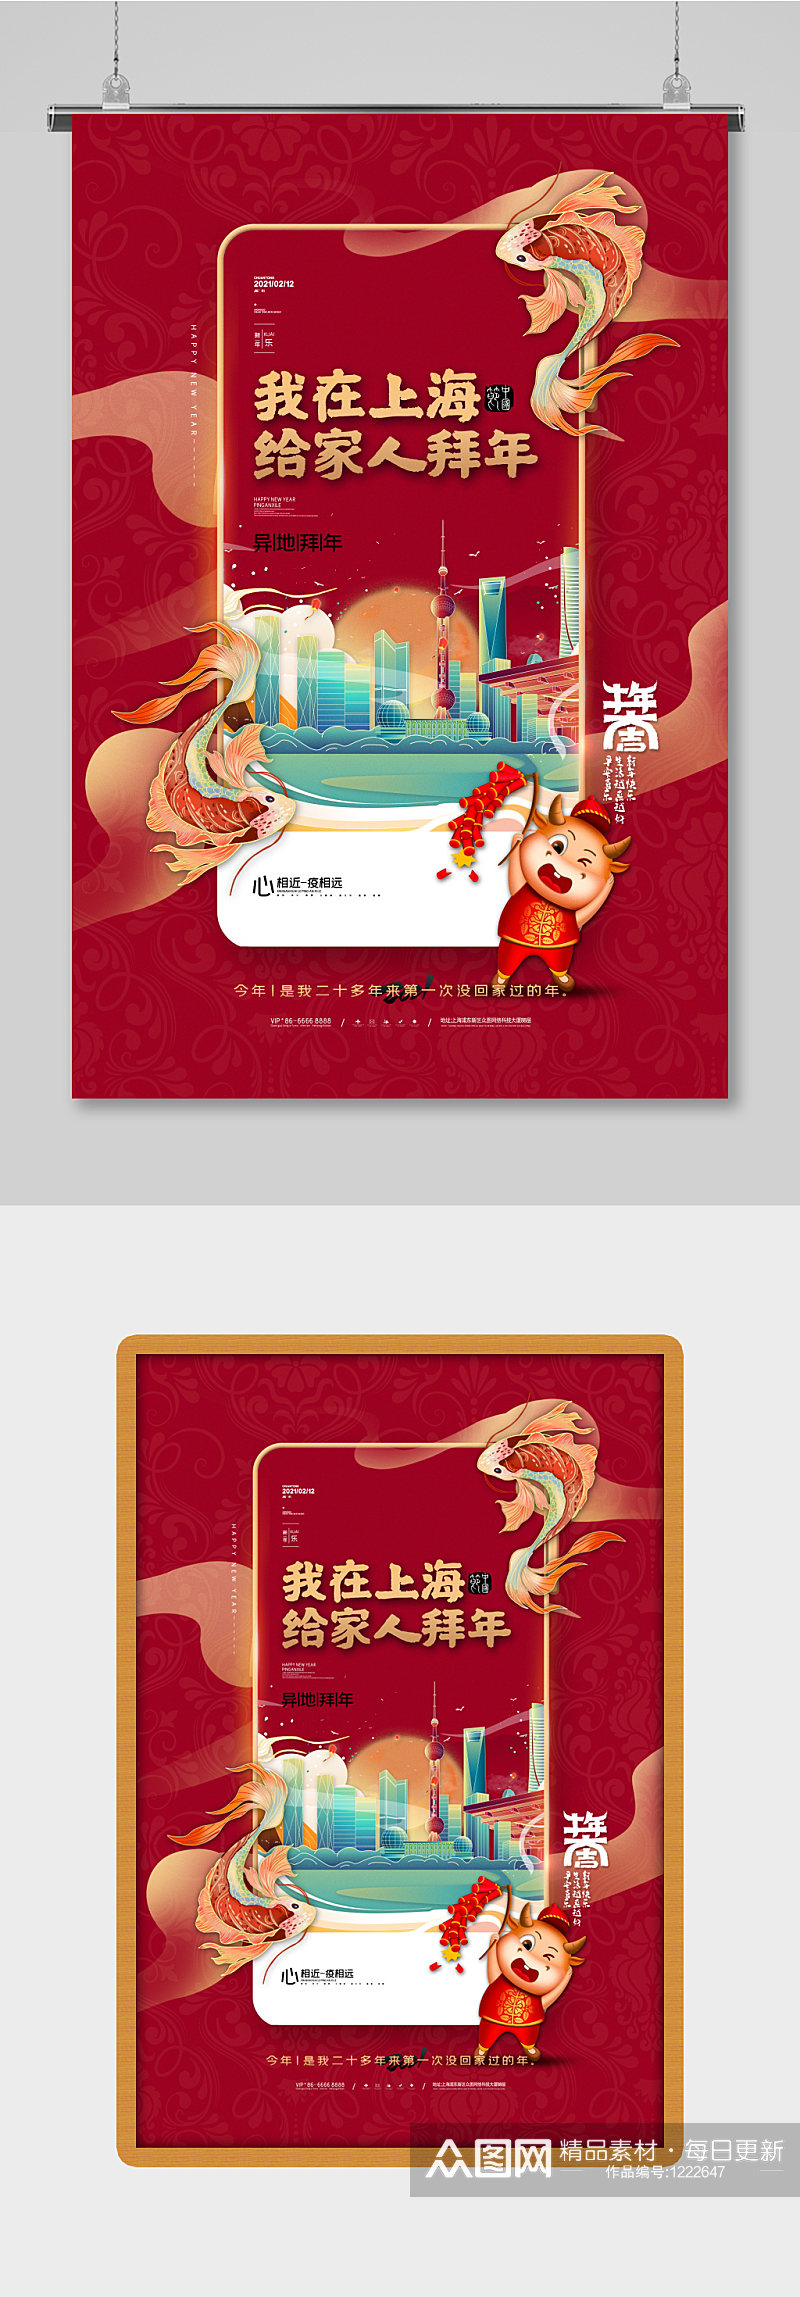 简约大气我在上海给您拜年了新年海报设计素材